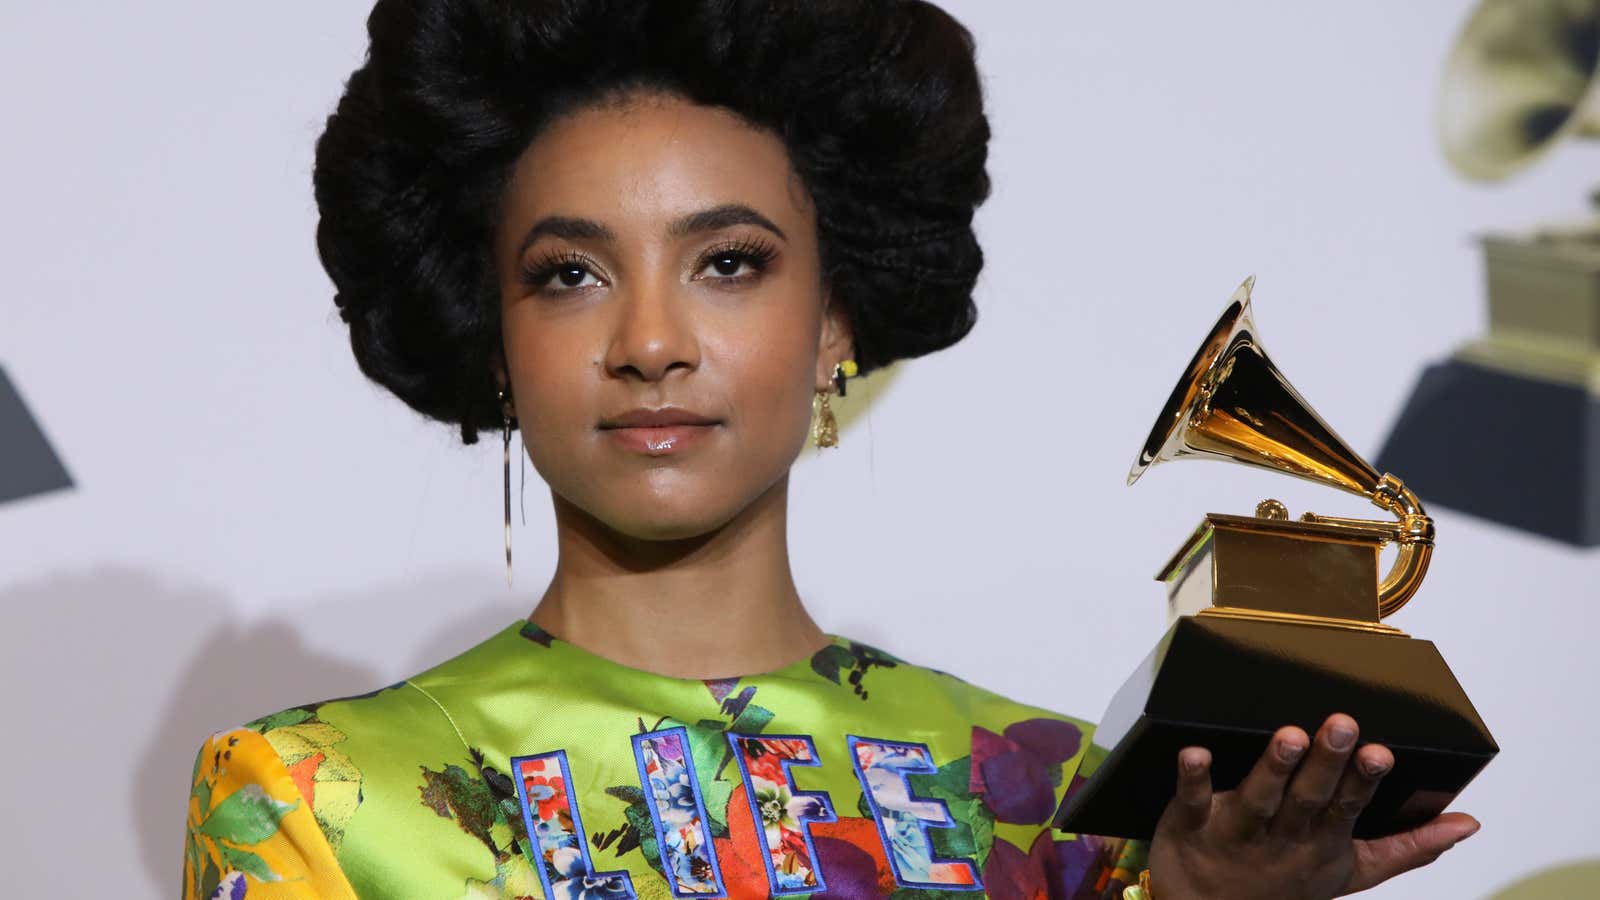 Jazz artist Esperanza Spalding at the 2020 Grammys in LA.